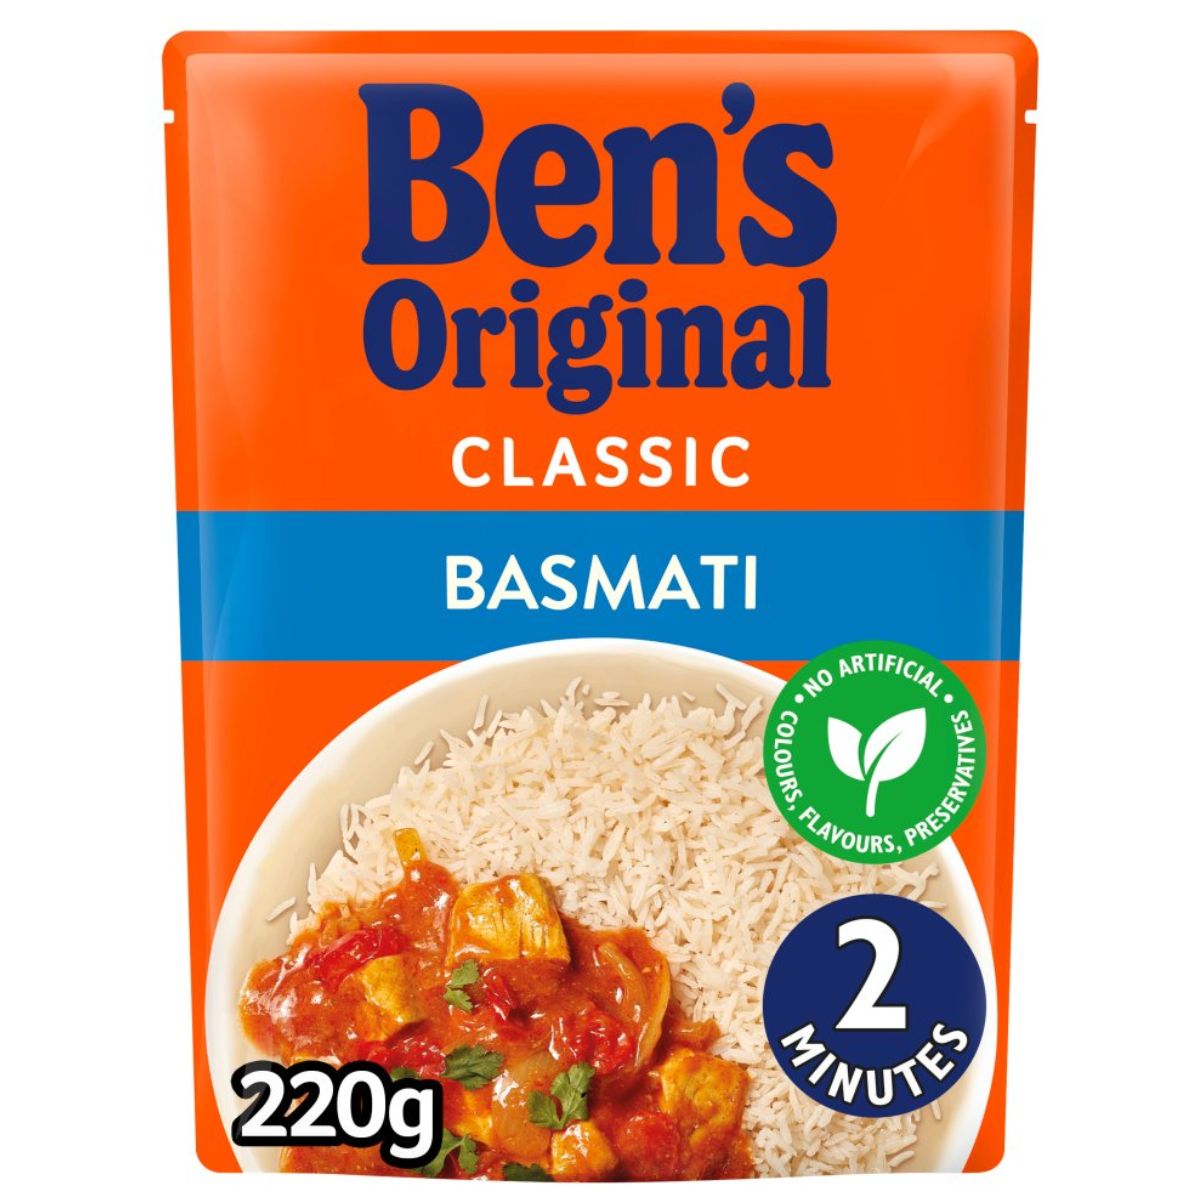 Bens Original - Basmati Microwave Rice - 220g classic basmati rice.